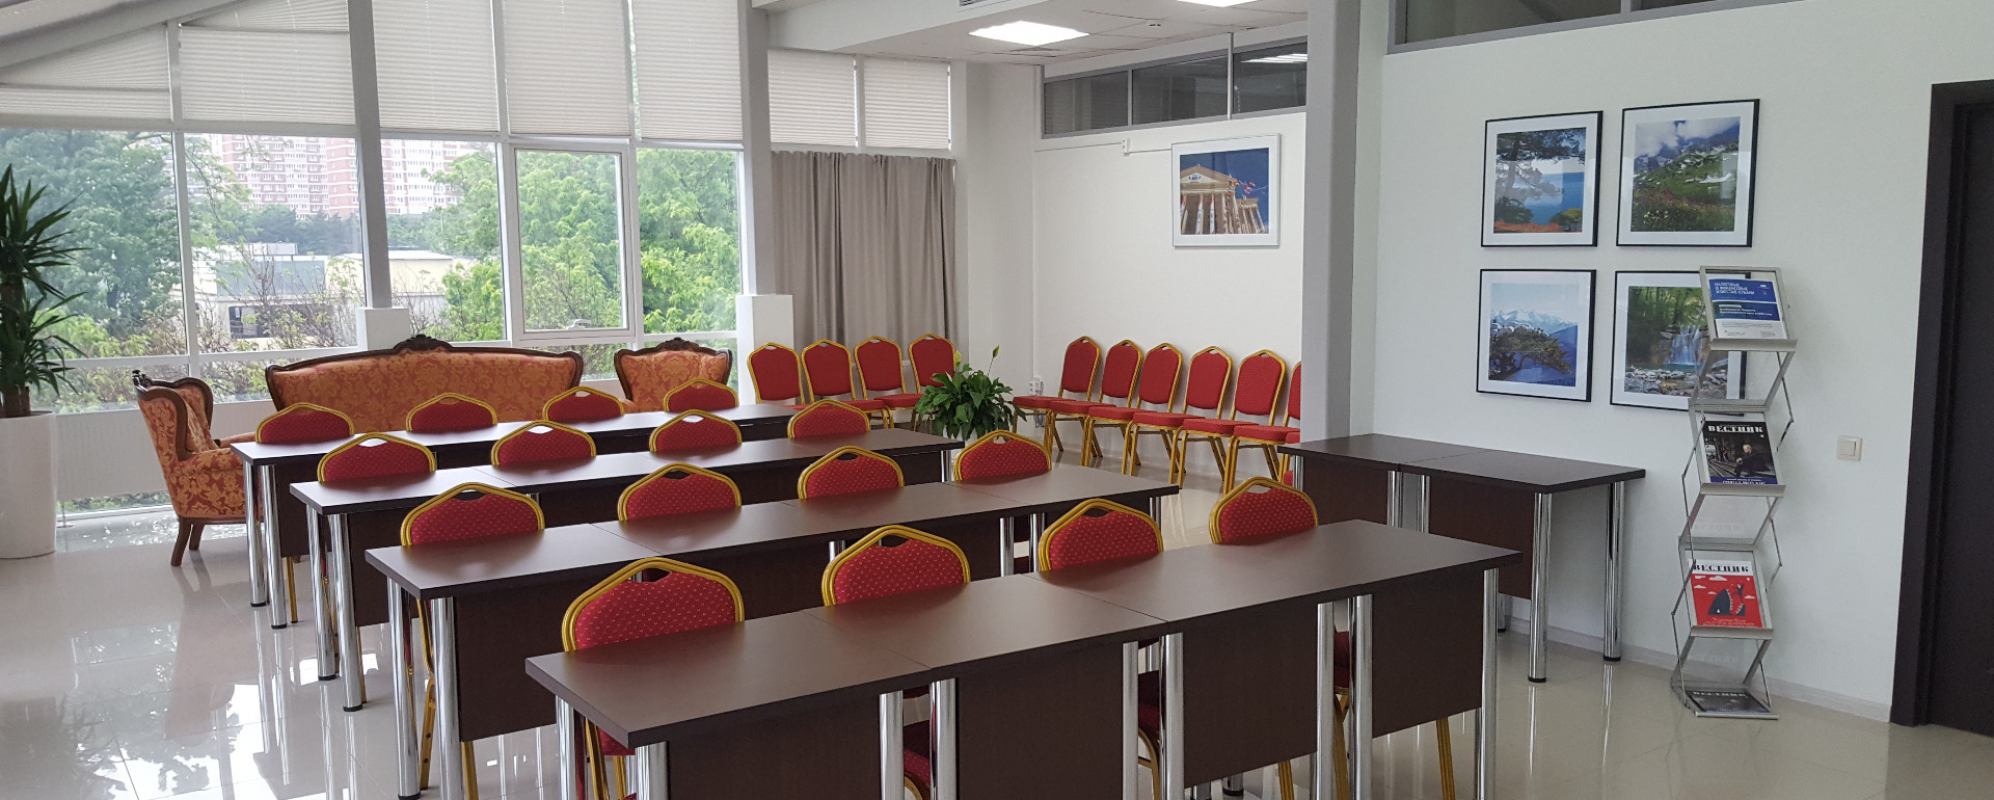 Фотографии комнаты для переговоров ТППП Краснодарского края Конференц-зал Малый